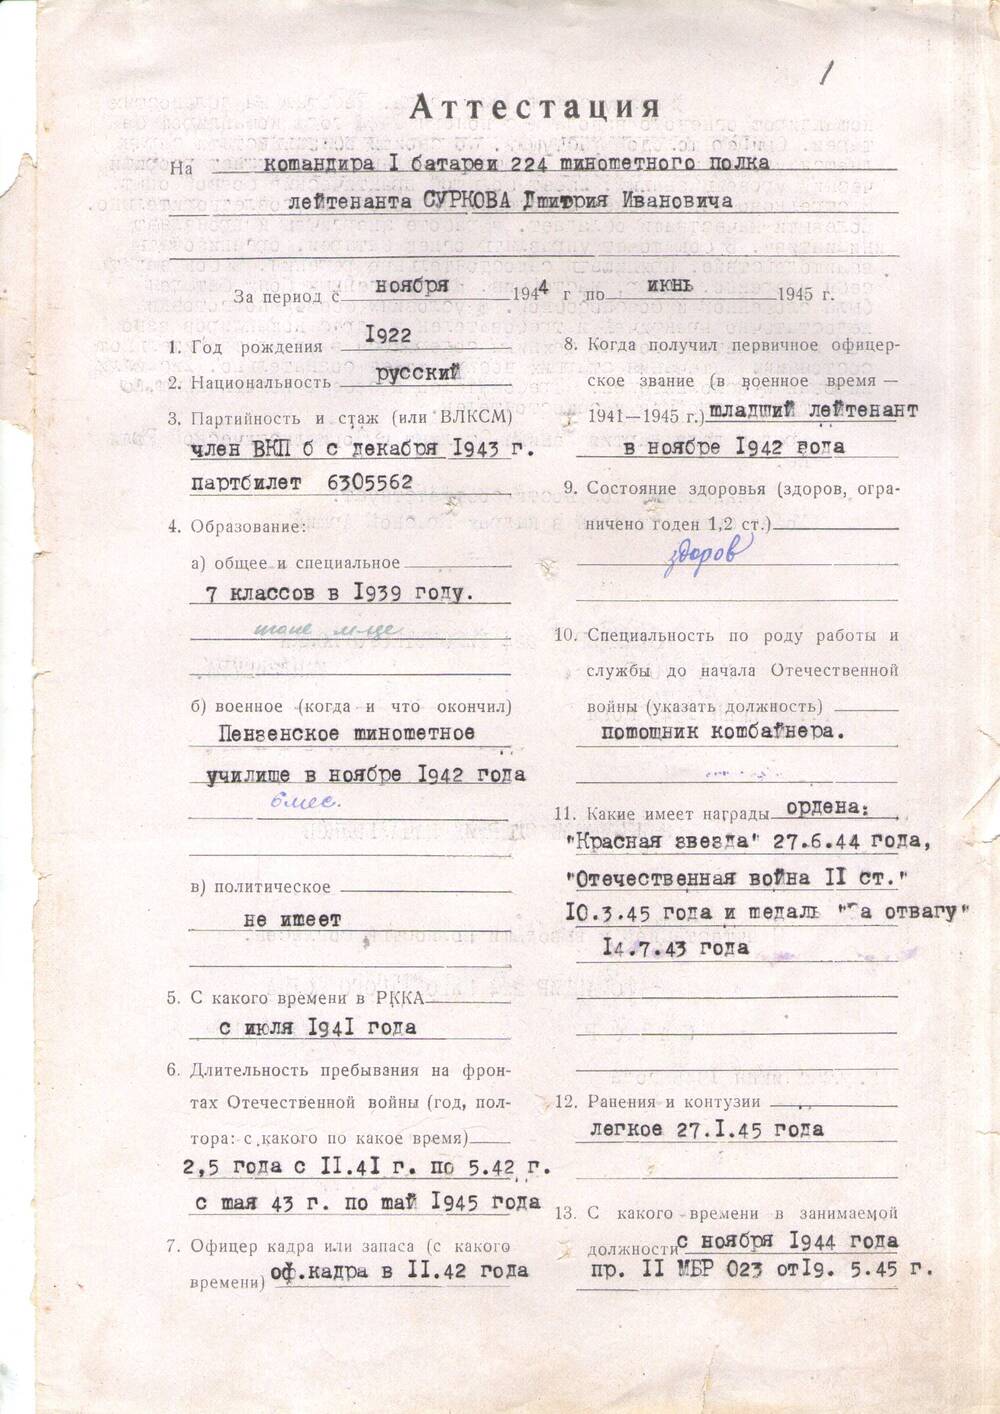 Аттестационный лист командира  I батареи 224 минометного полка лейтенанта Суркова Д.И.